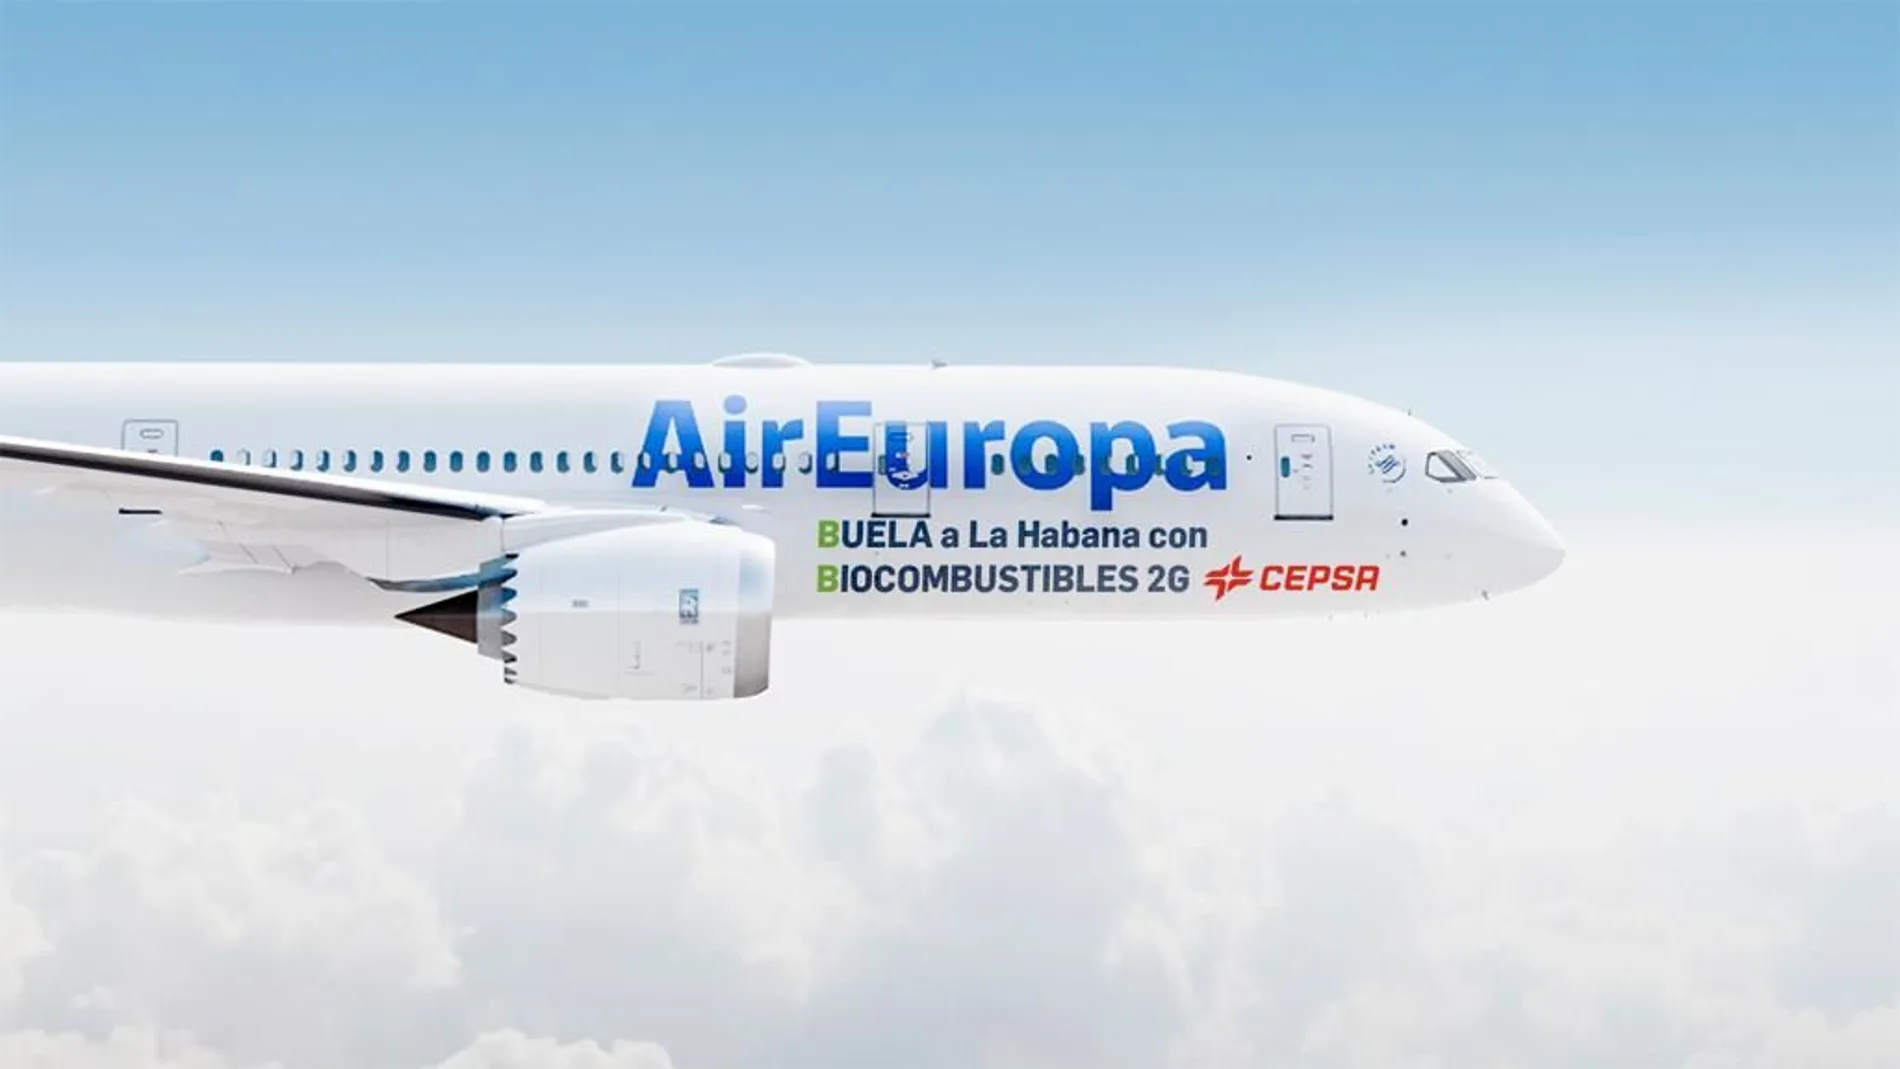 Avión de Air Europa que vuela con biocombustibles Cepsa